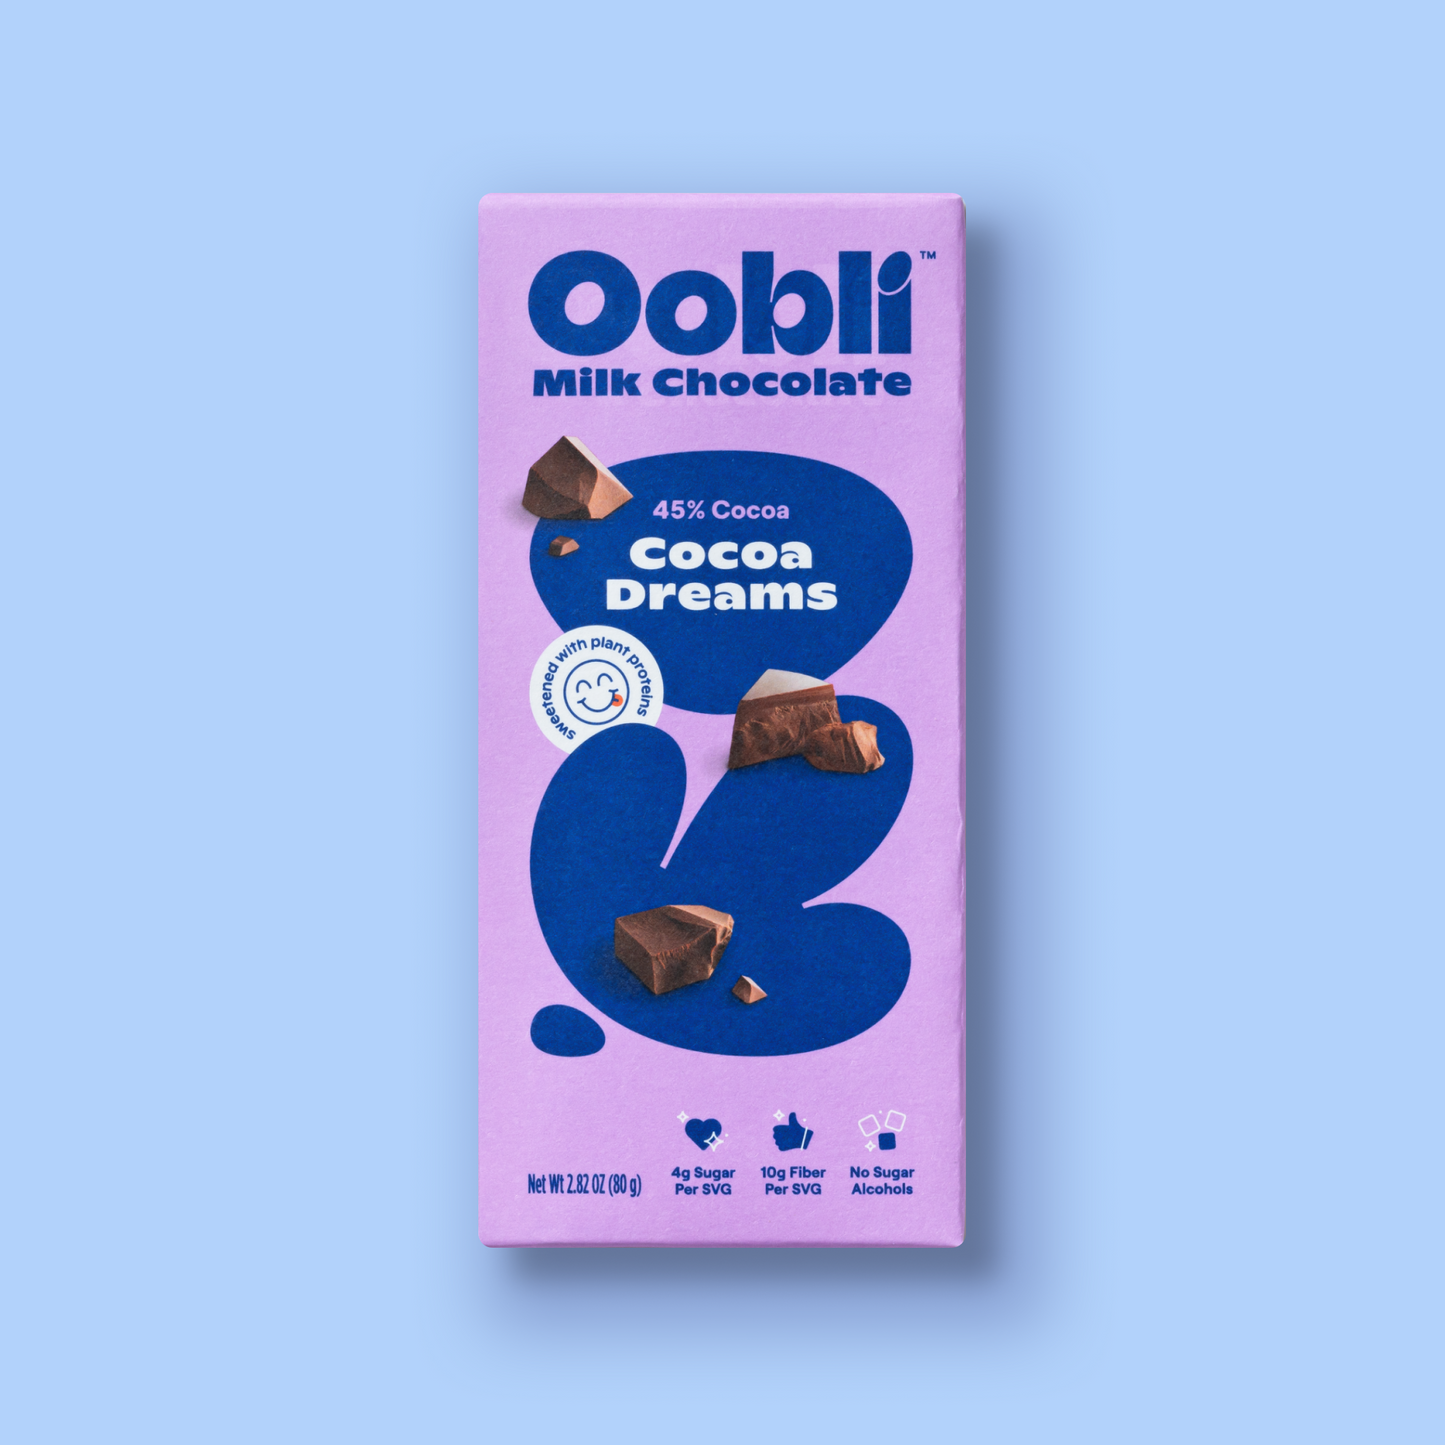 Cocoa dreams milk chocolate bars